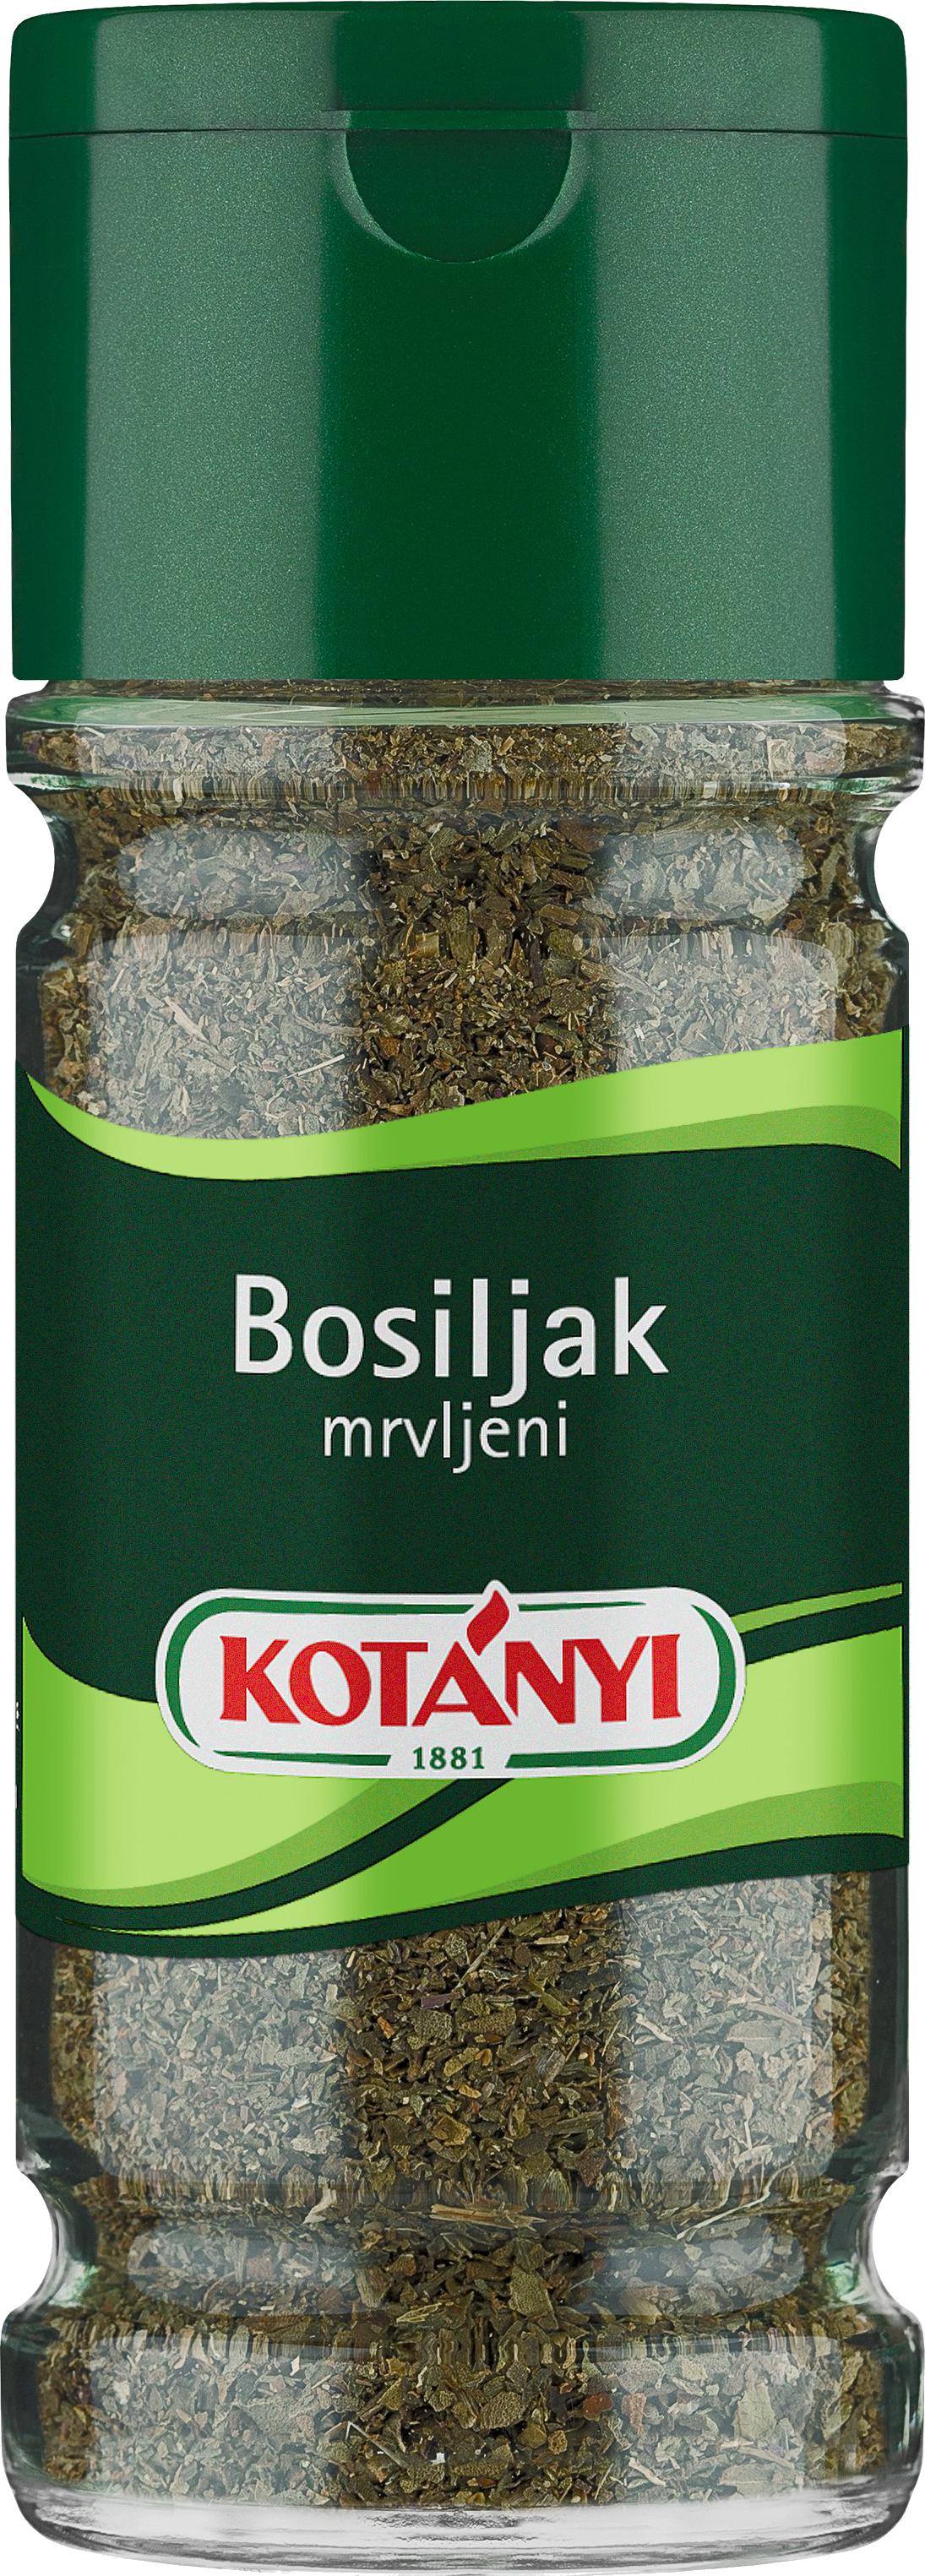 Slika za Začin bosiljak Kotanyi 15 g